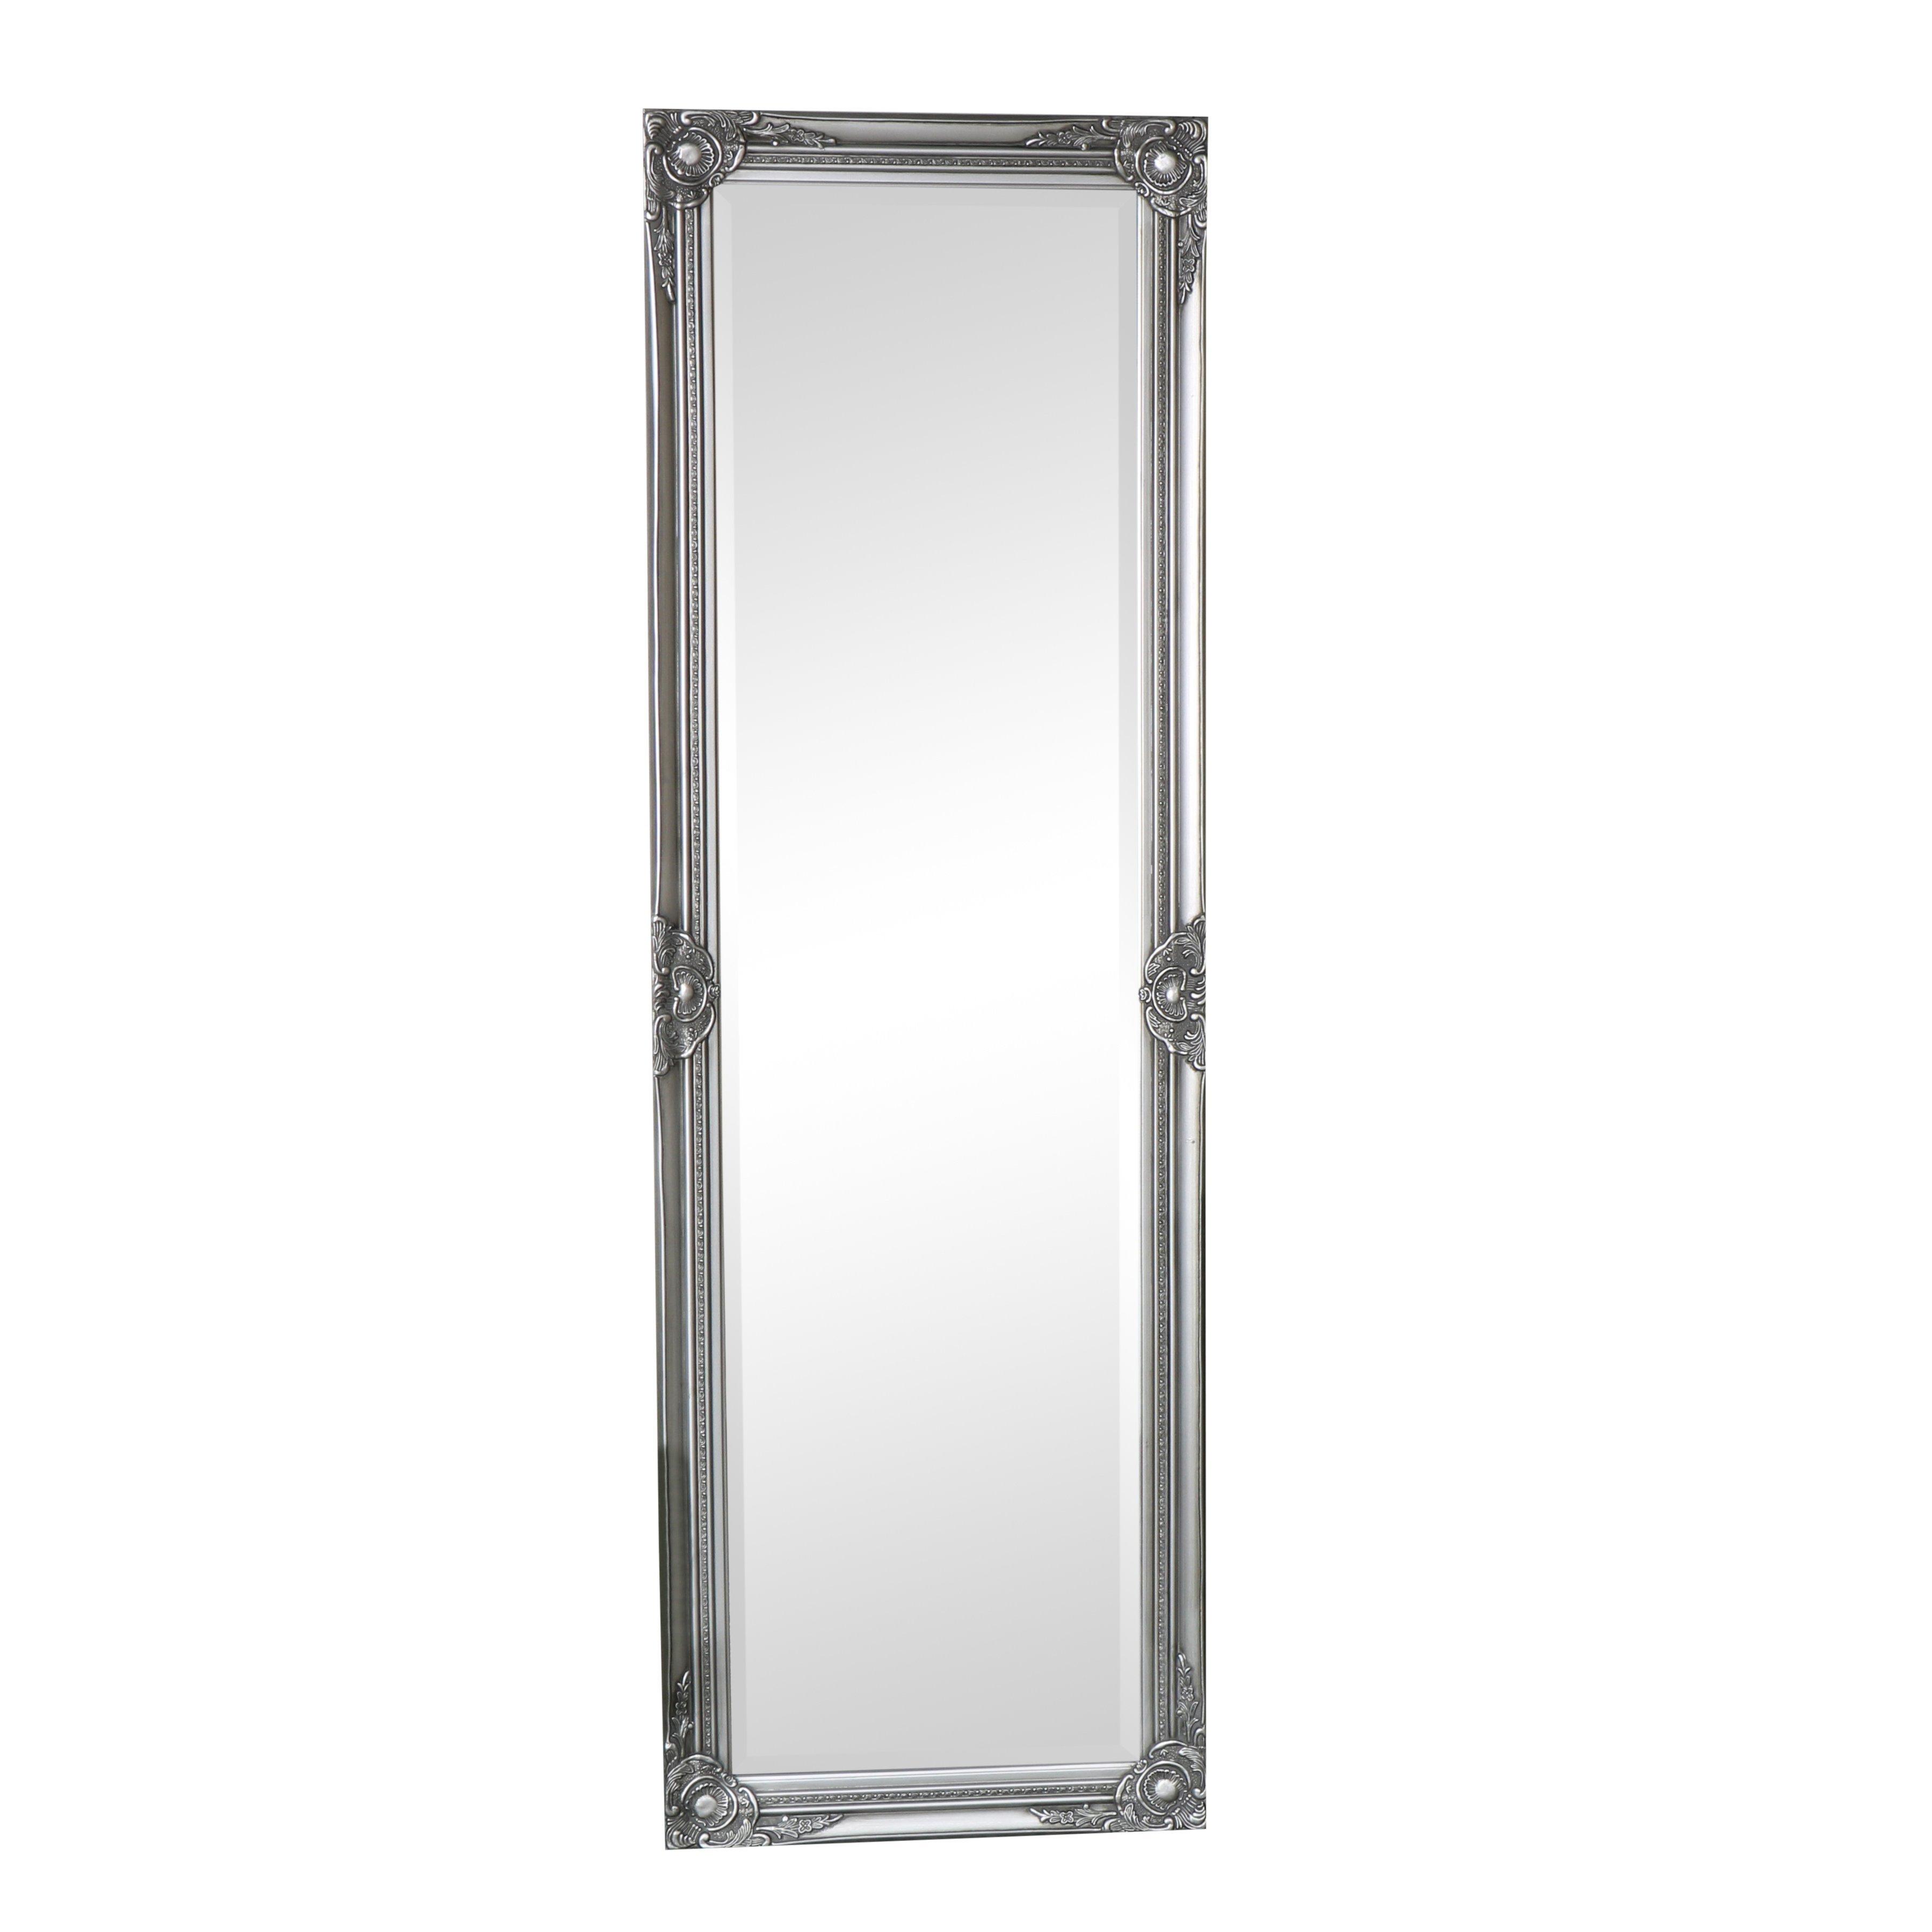 Ornate Silver Full Length Leaner /wall Mirror 168cm X 54cm